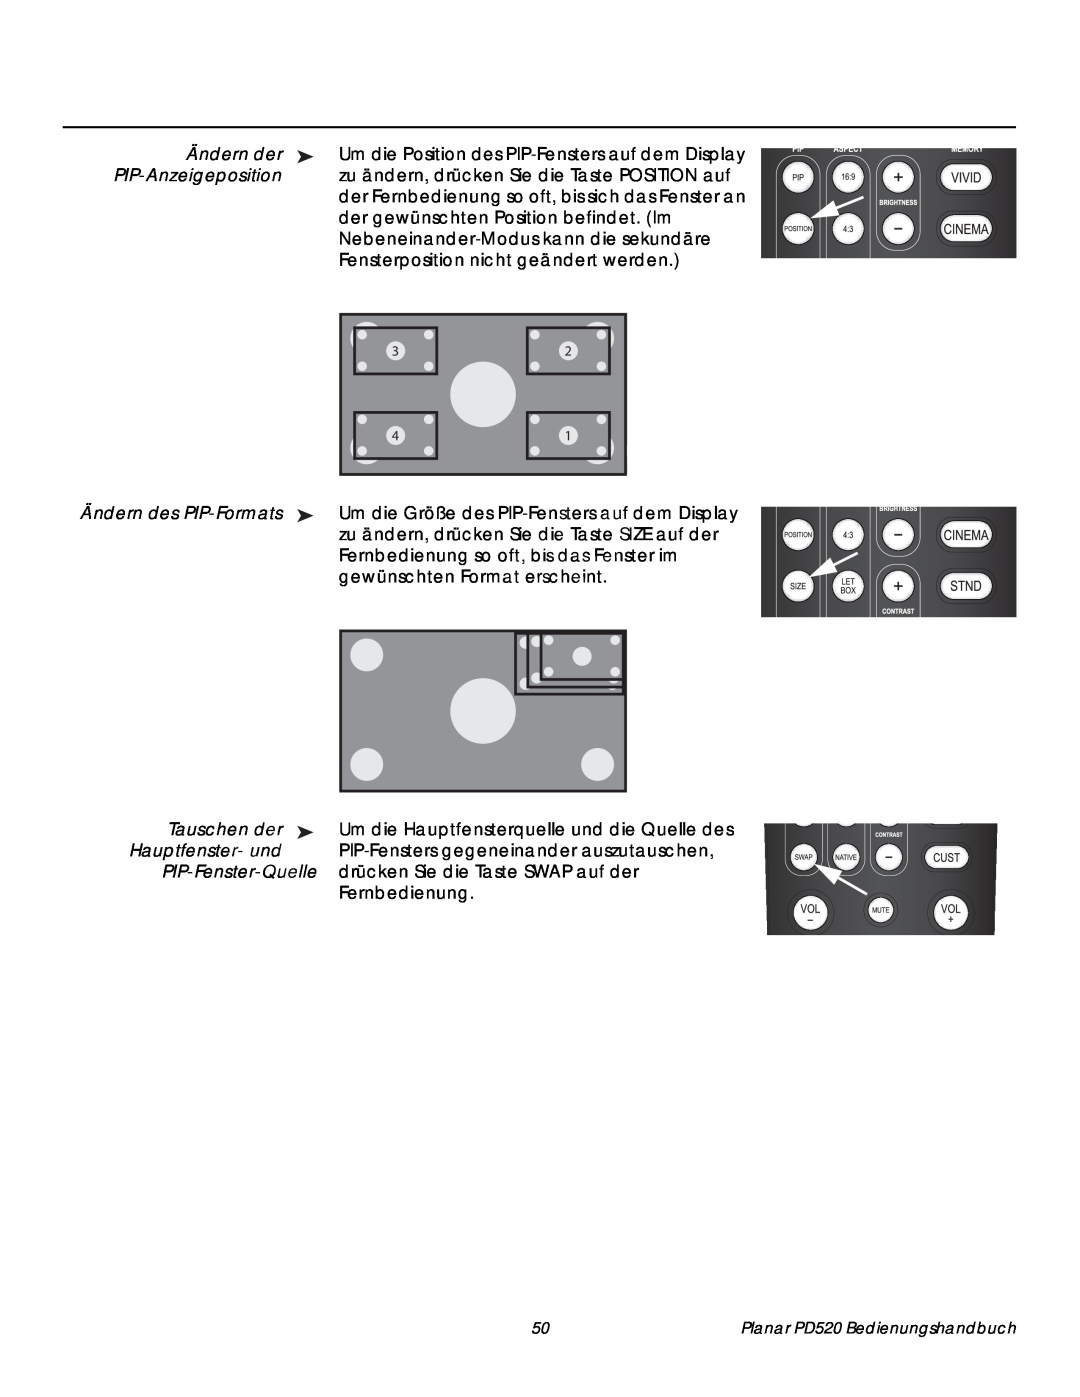 Planar PD520 Ändern der, PIP-Anzeigeposition, Ändern des PIP-Formats, Tauschen der, Hauptfenster- und, PIP-Fenster-Quelle 